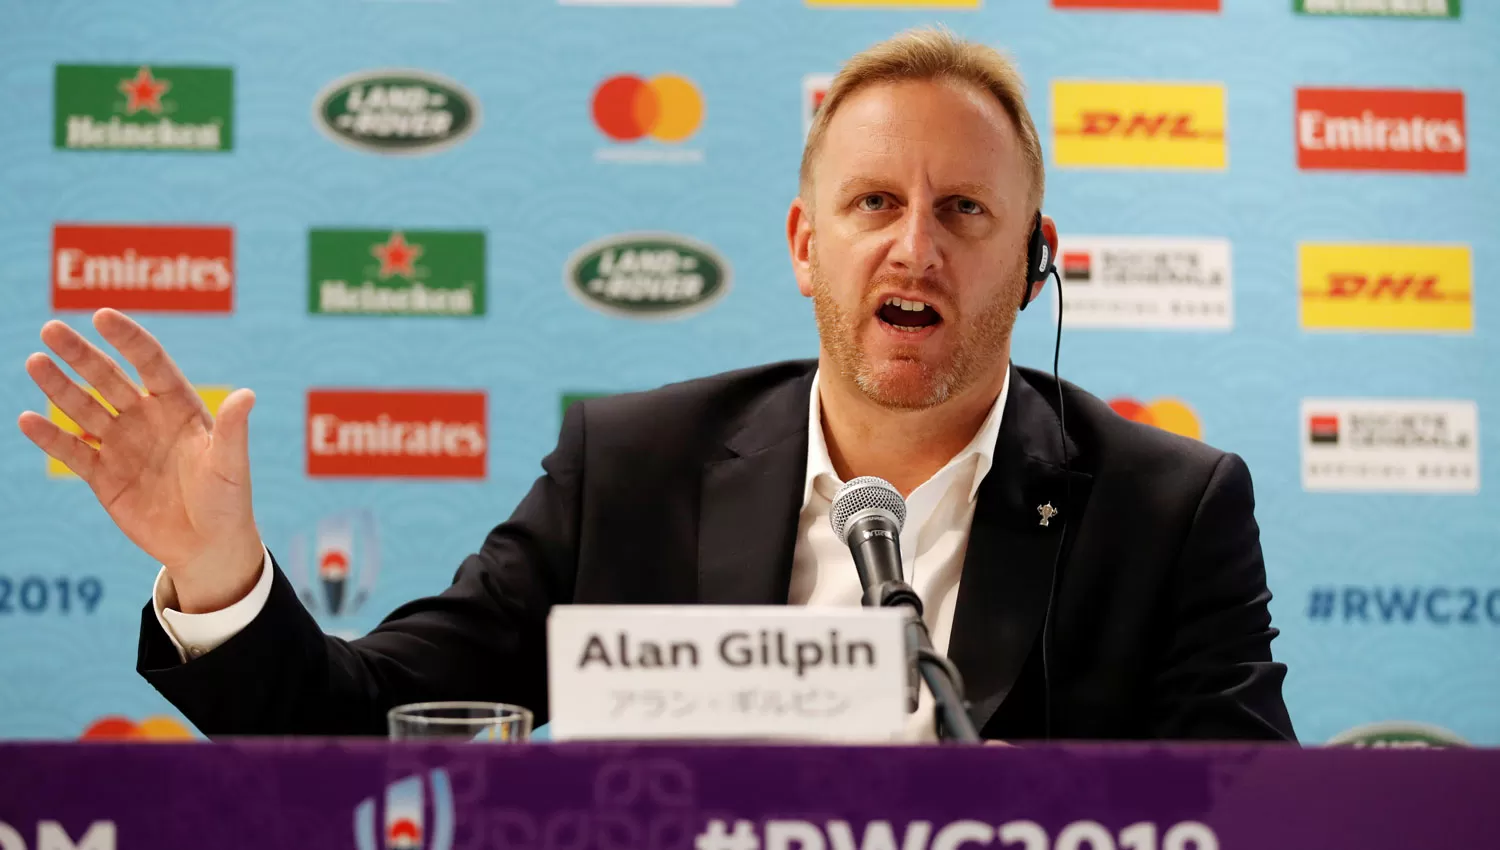 POR PRECAUCIÓN. Alan Gilpin, jefe de la Oficina de Operaciones del torneo, brindó detalles sobre la decisión tomada por la IRB.